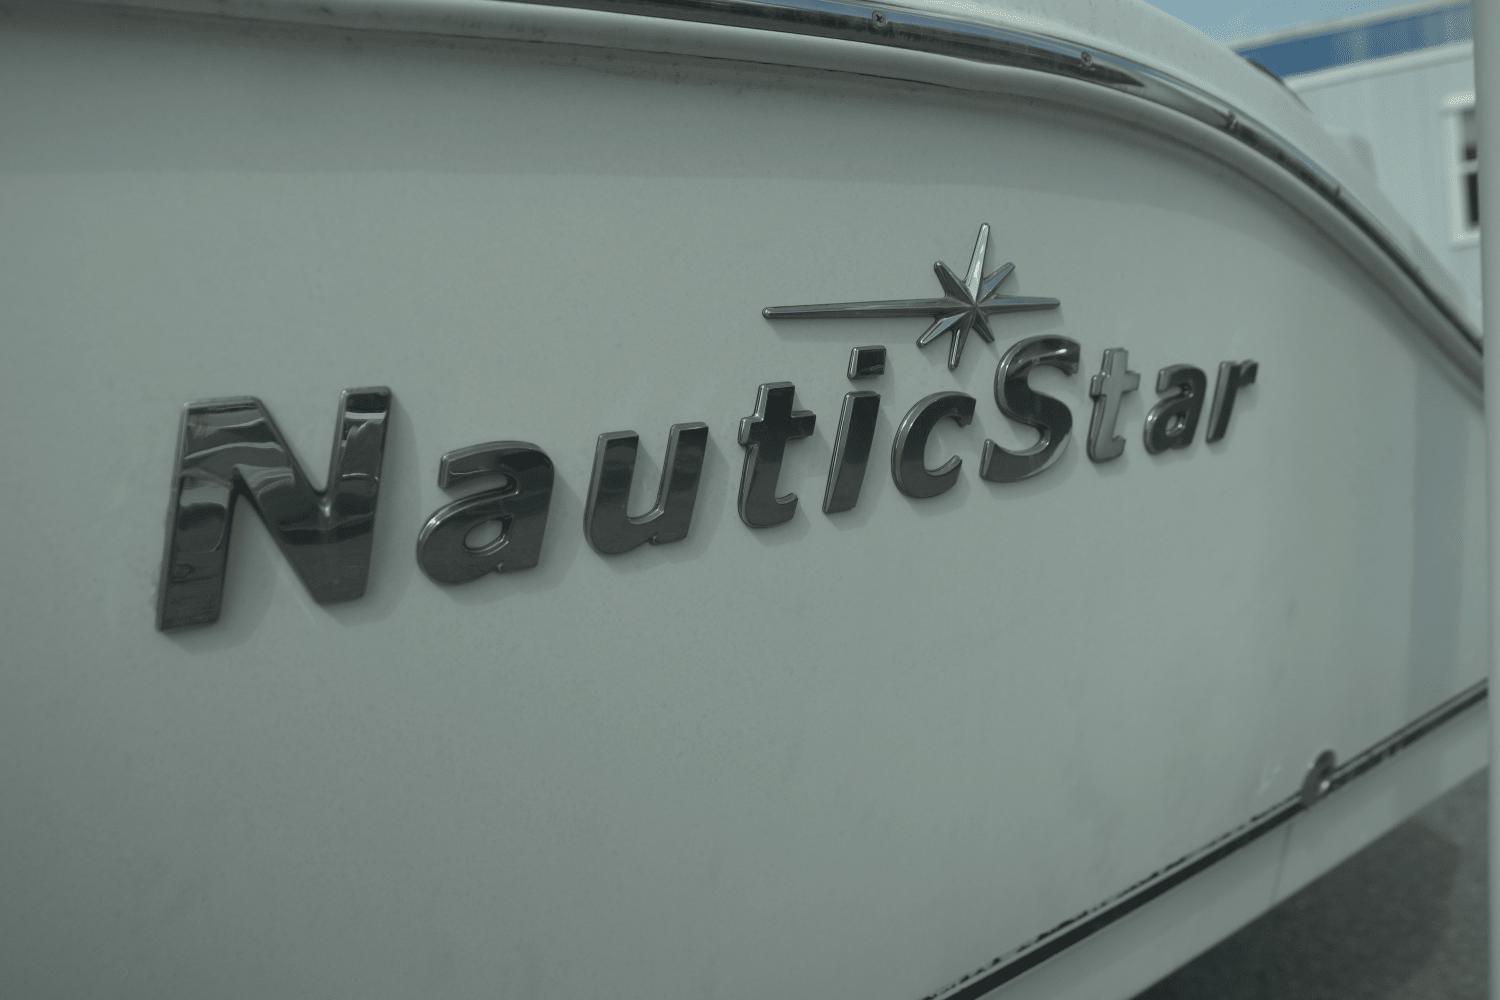 2013 NauticStar 2000XS